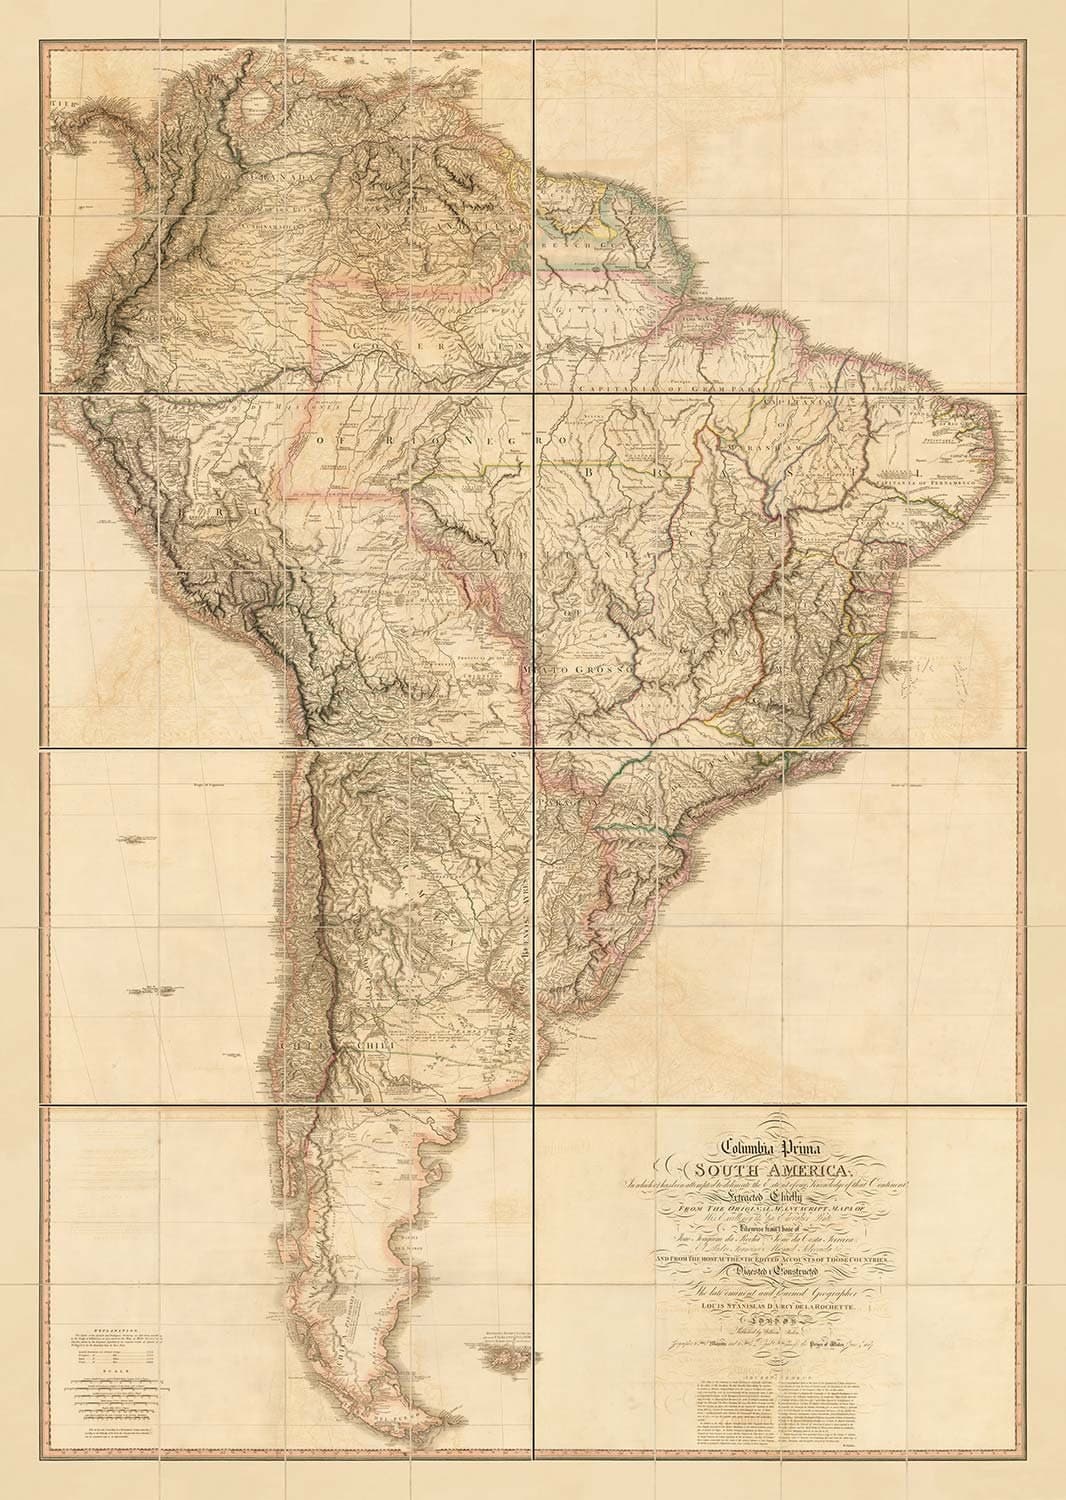 Seltene alte Karte von Südamerika von Faden, 1807 - Spanischer Kolonialismus - Brasilien, Peru, Kolumbien, Chile, Venezuela, Amazon